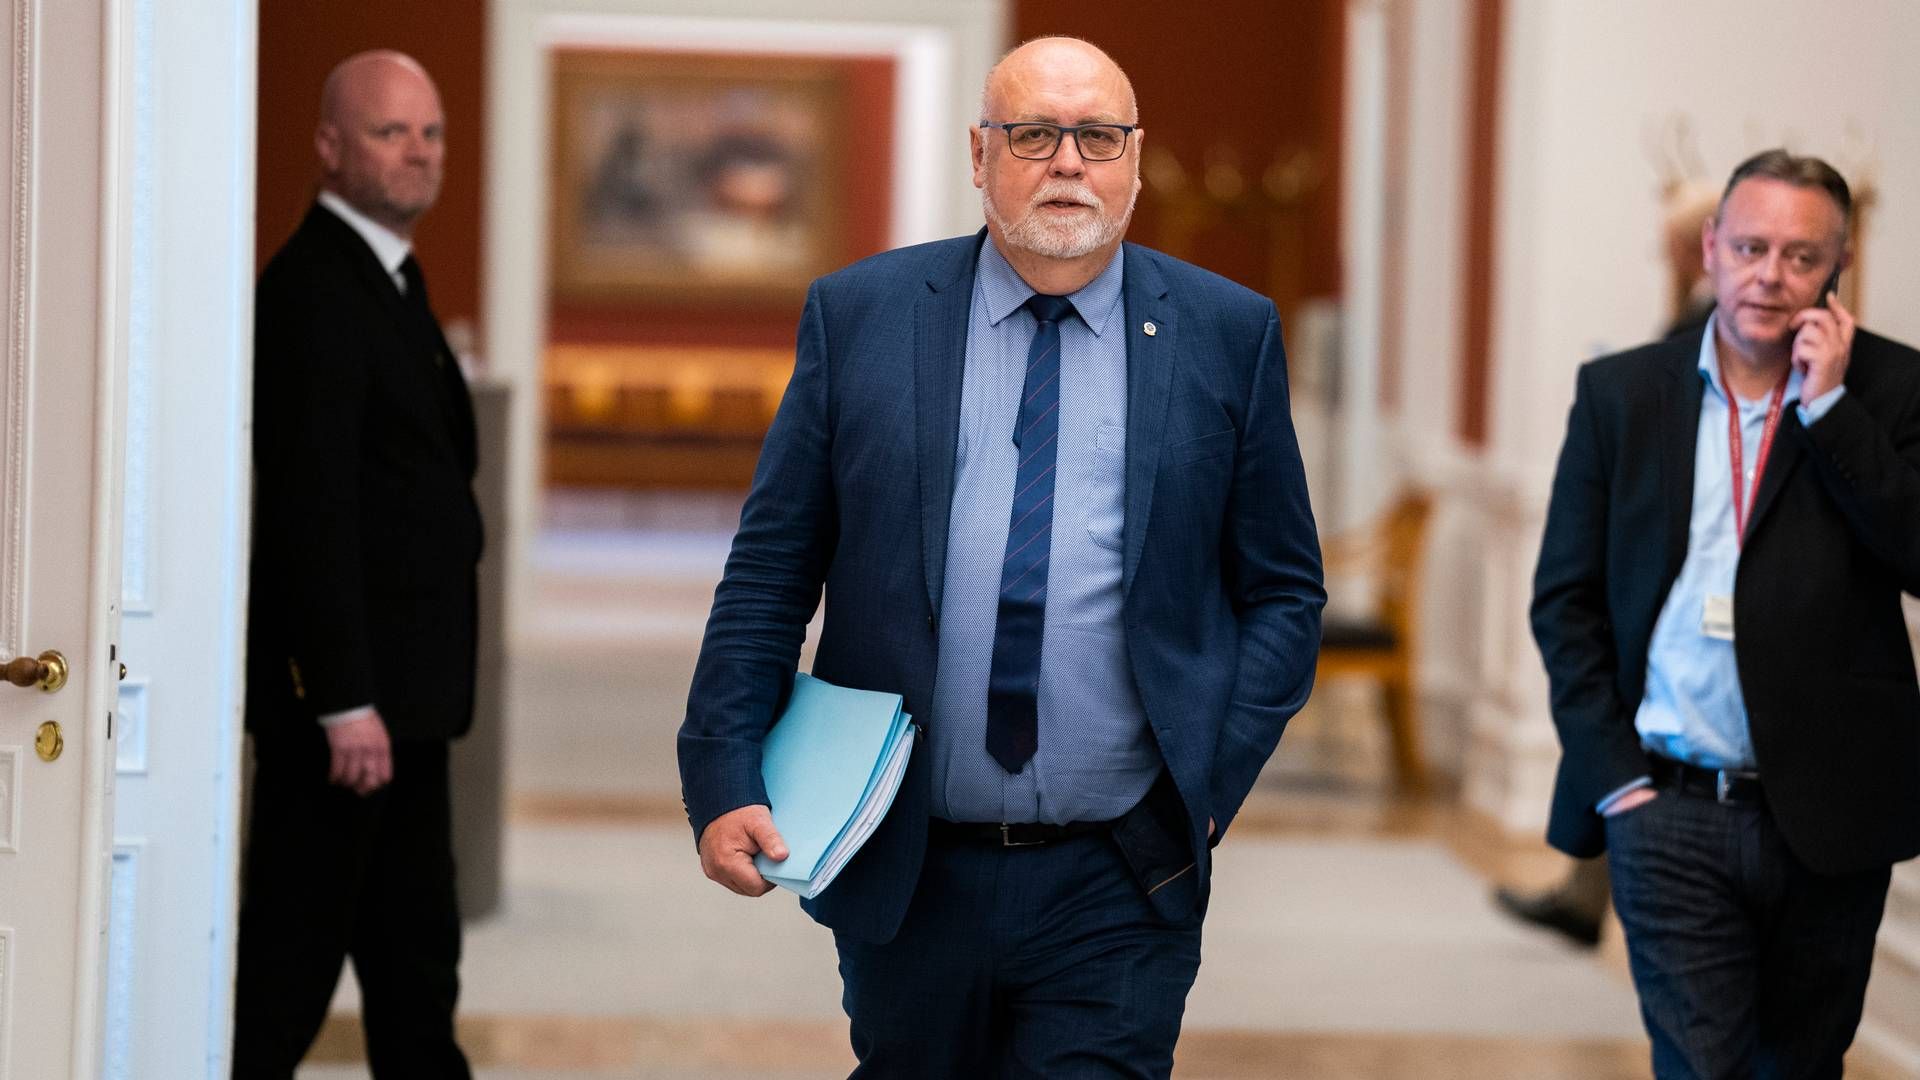 Transportordfører hos Venstre, Kristian Pihl Lorentzen, har været blandt drivkræfterne i at bevare 11 kg-reglen. | Foto: Martin Sylvest/Ritzau Scanpix